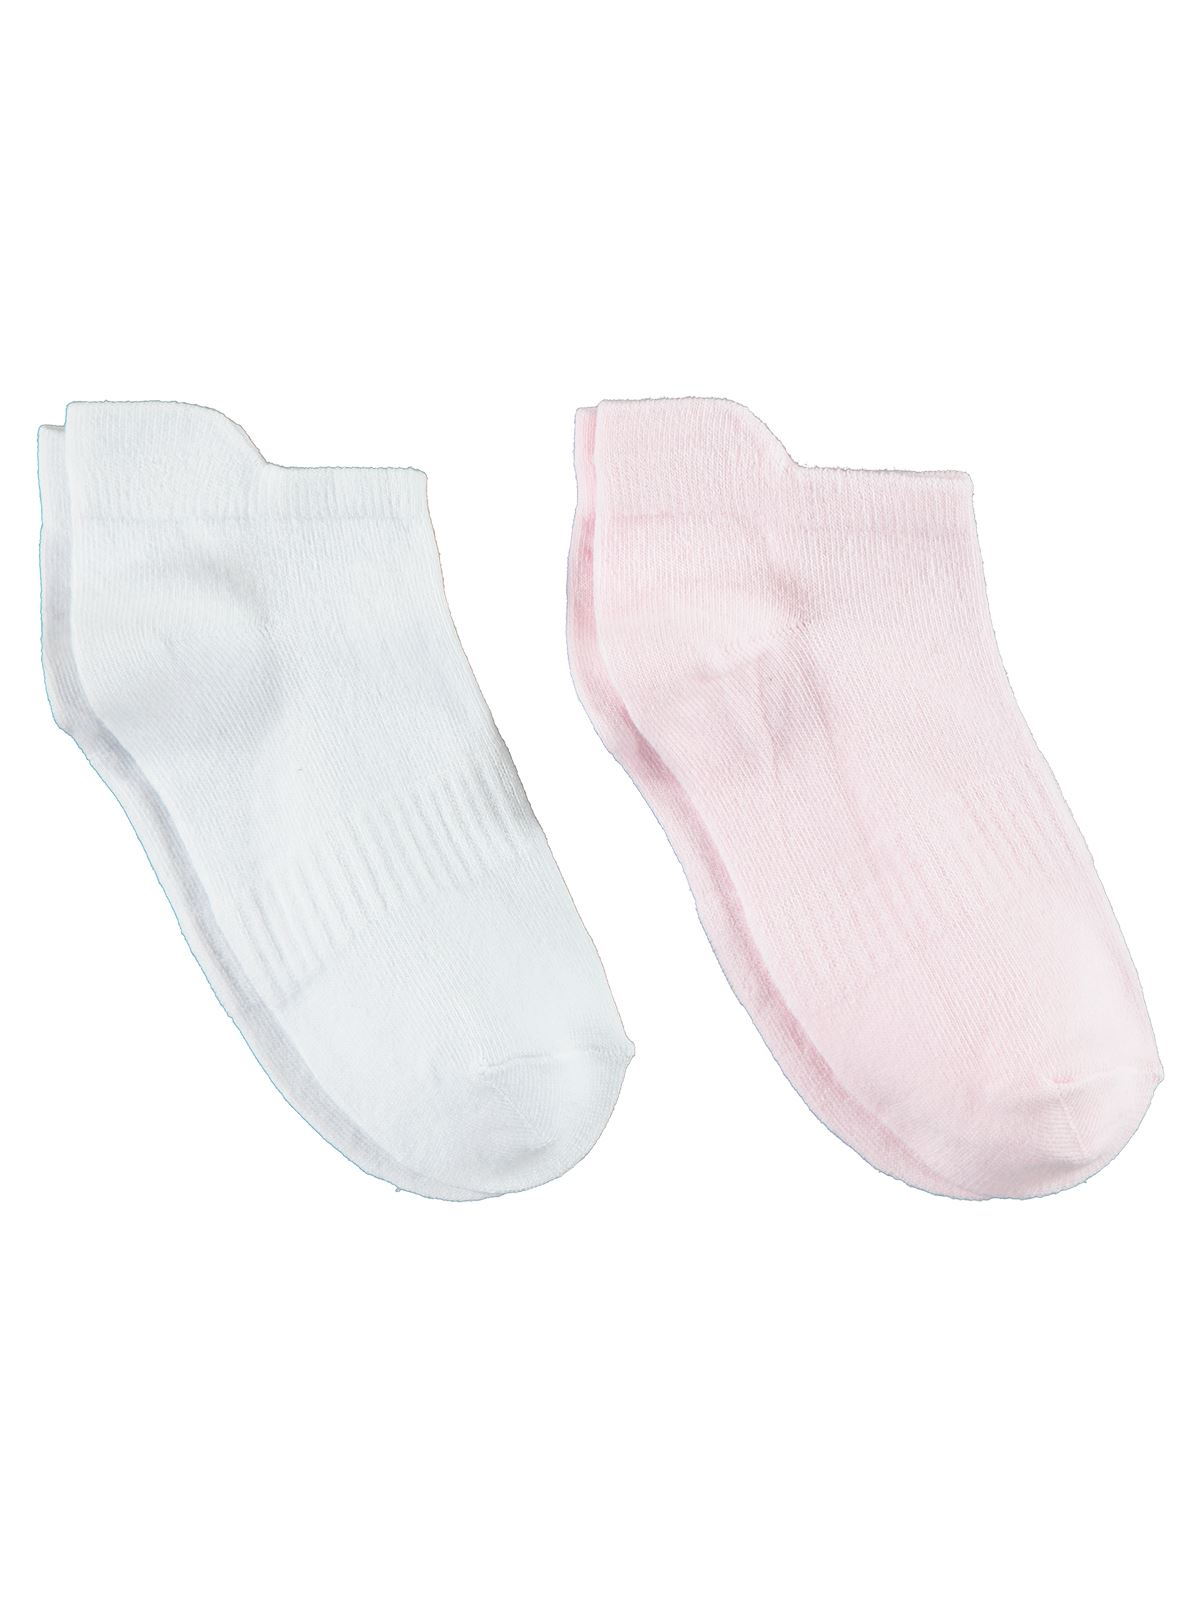 Gzn Kadın 2'li Dikişsiz Patik Çorap 36-40 Numara Beyaz-Pembe